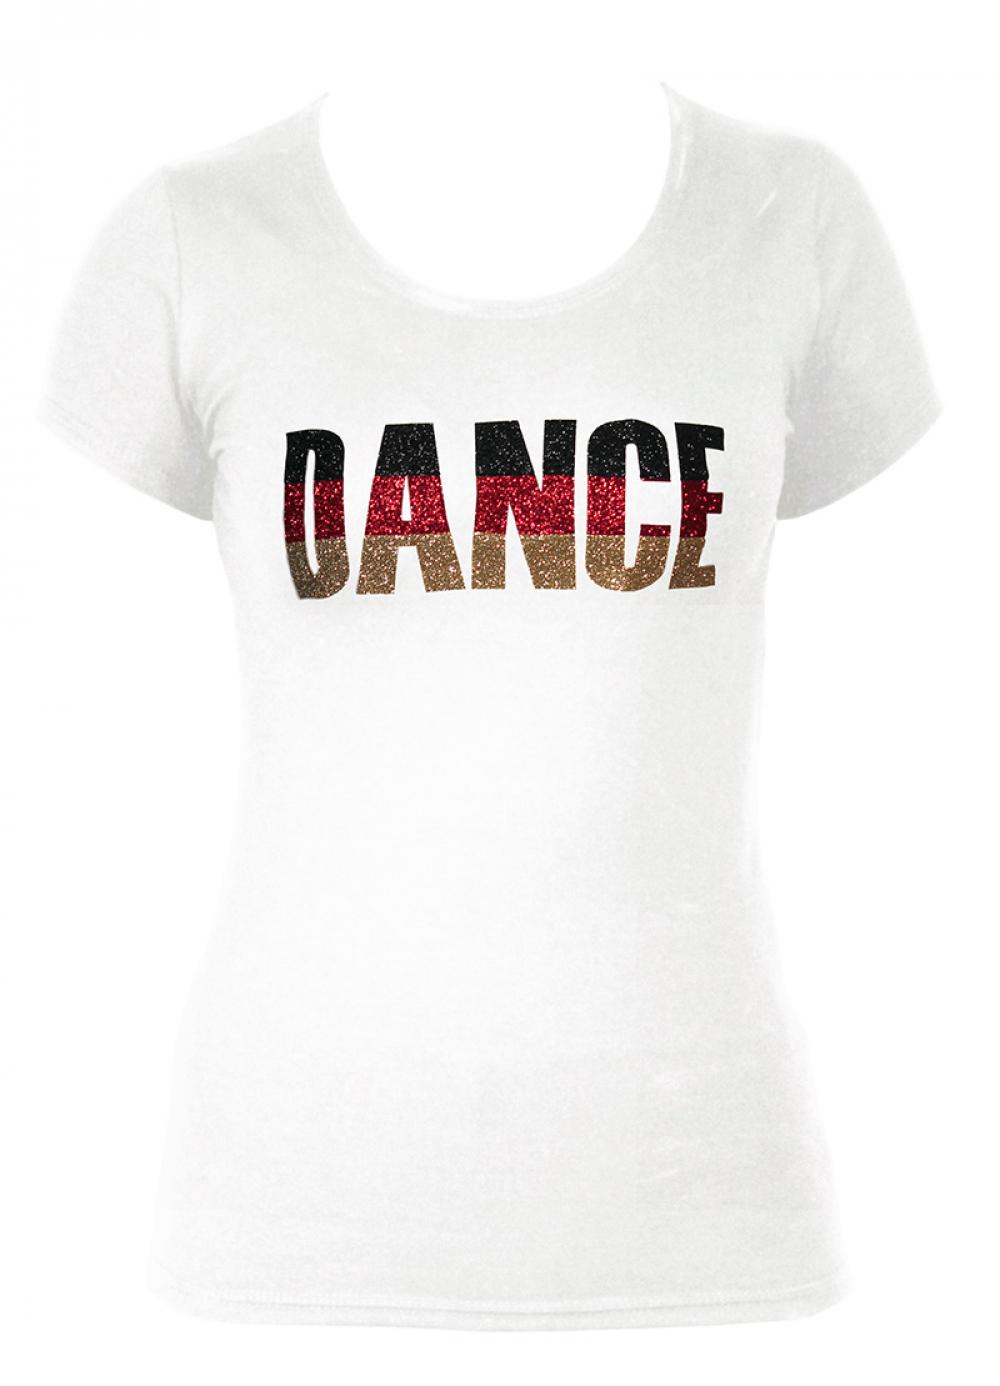 DM T-Shirt dance_v2.jpg